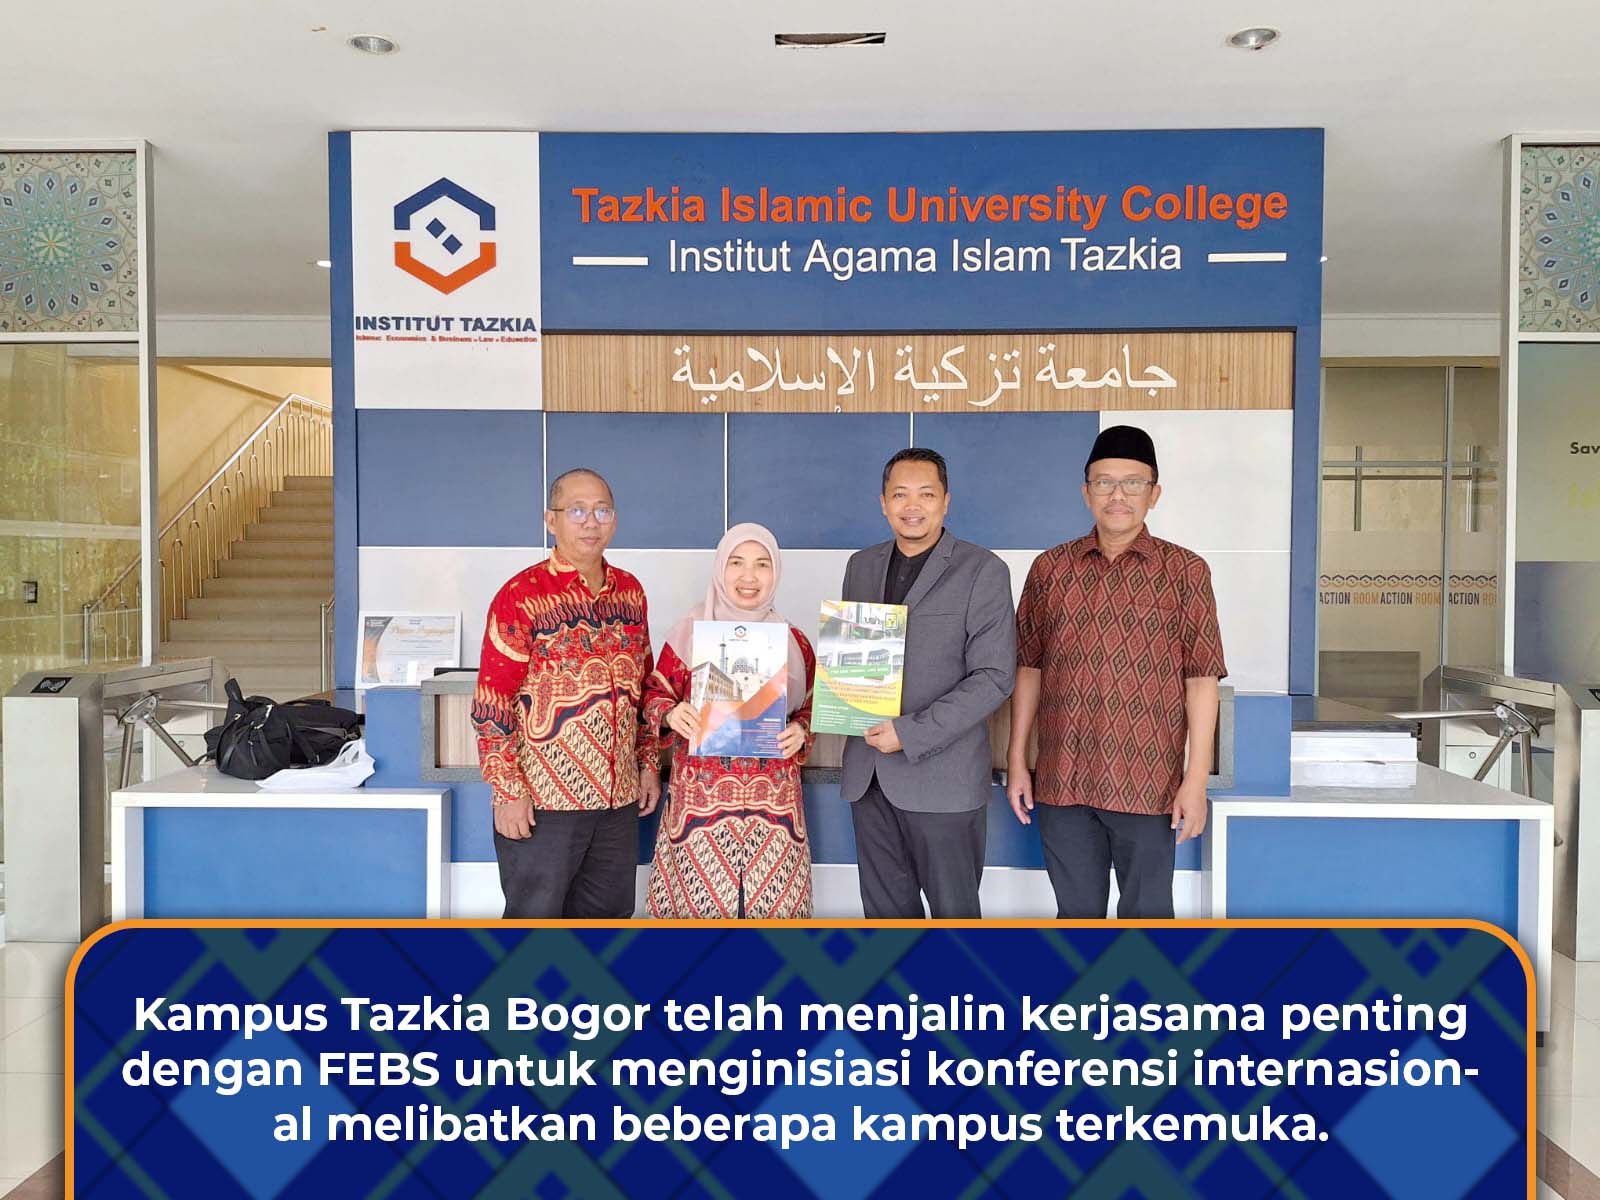 Kerjasama Konferensi Internasional antara Kampus Tazkia Bogor dan kampus-kampus terkemuka